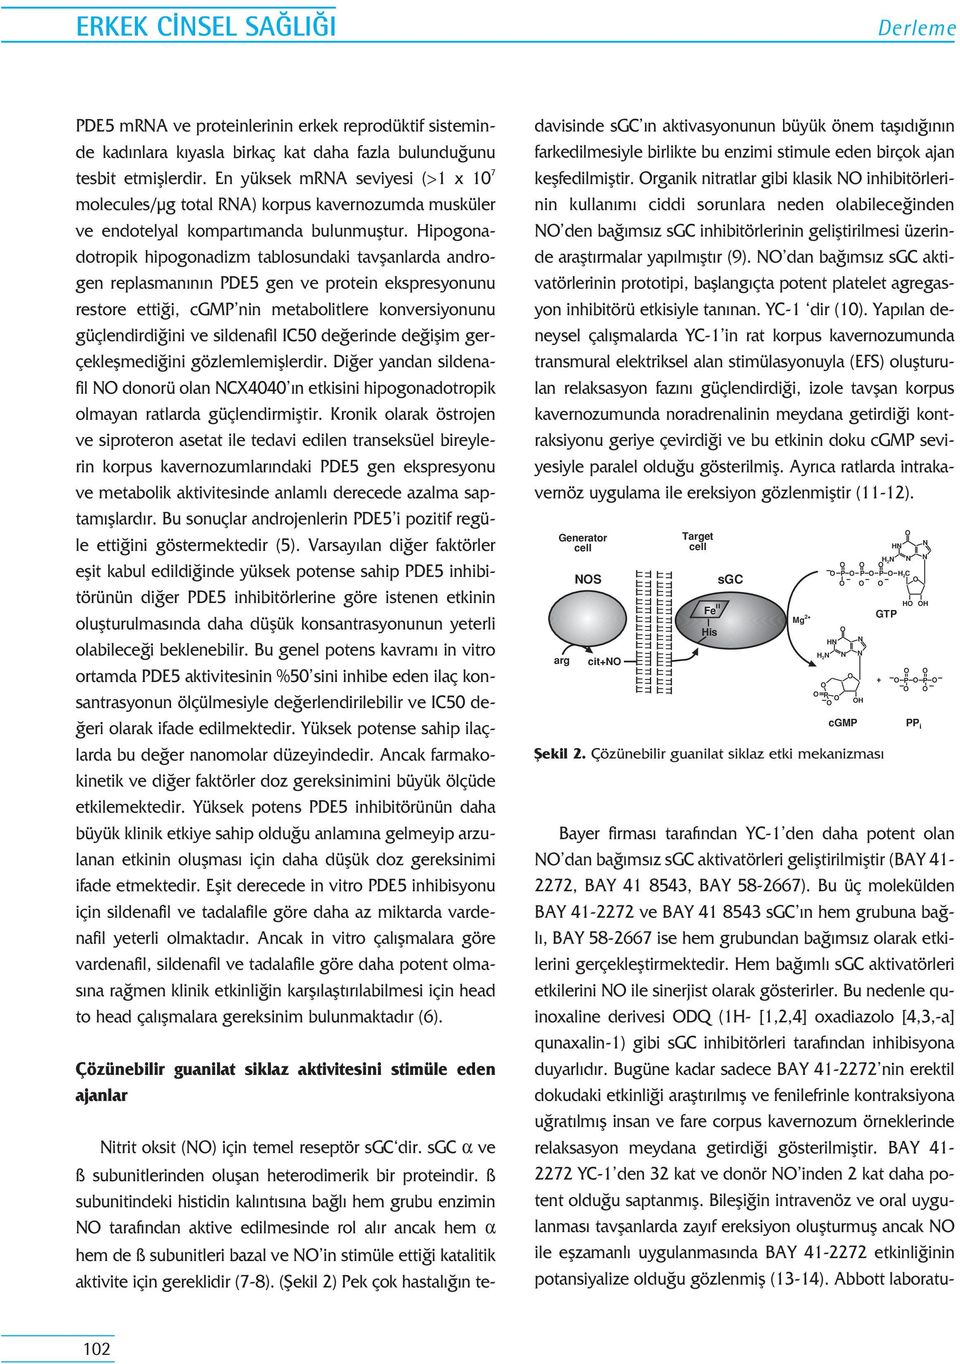 Hipogonadotropik hipogonadizm tablosundaki tavflanlarda androgen replasman n n PDE5 gen ve protein ekspresyonunu restore etti i, cgmp nin metabolitlere konversiyonunu güçlendirdi ini ve sildenafil